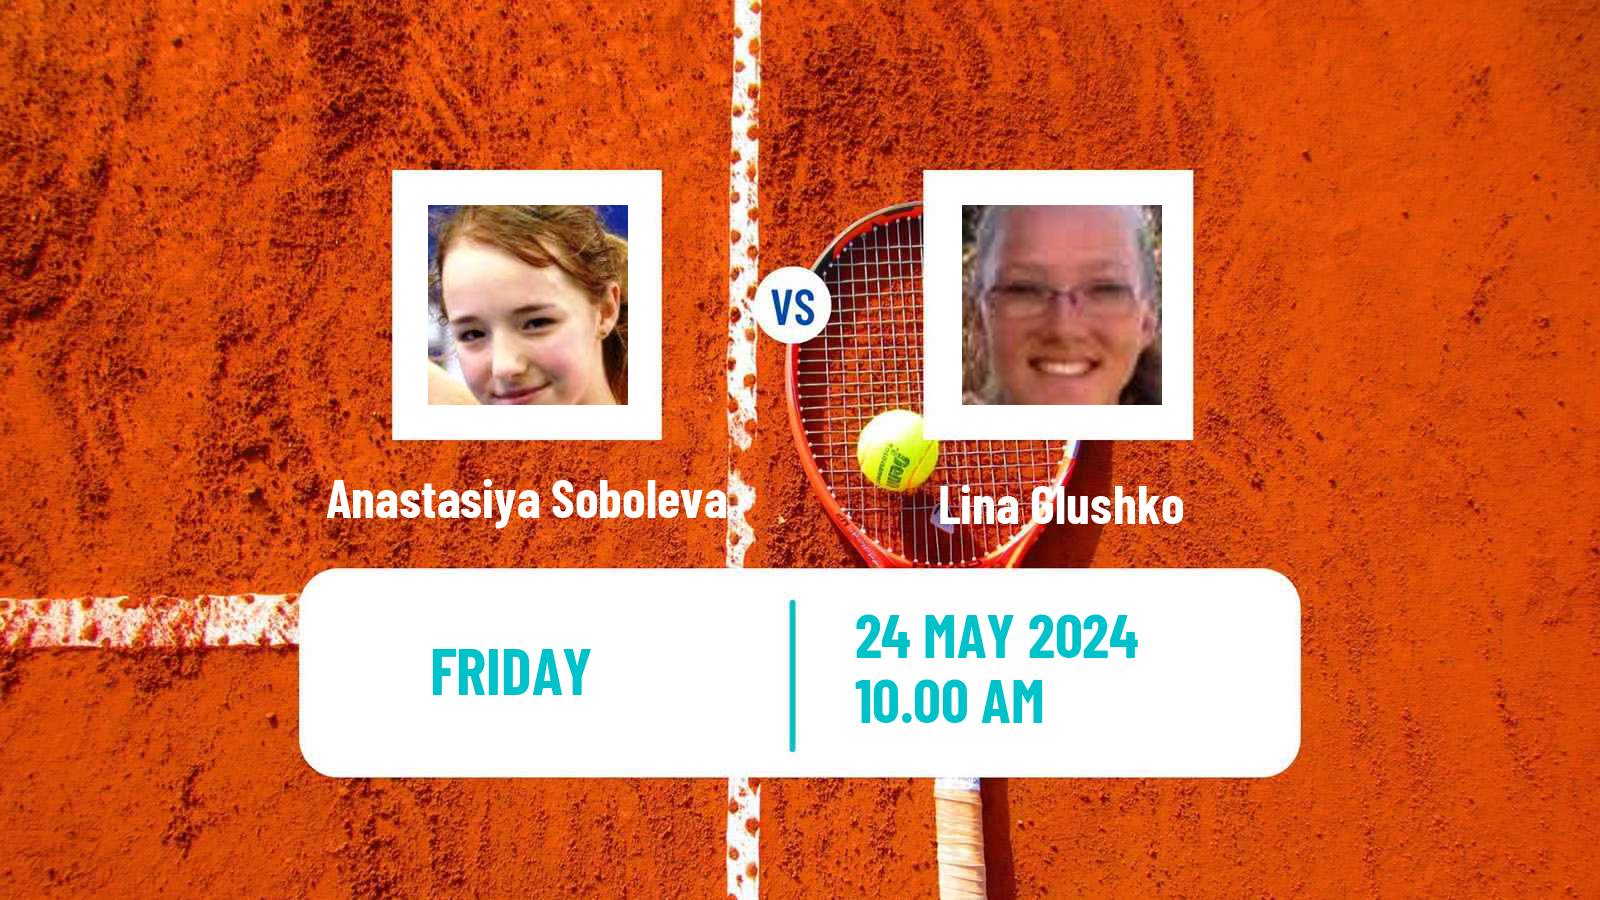 Tennis ITF W75 Grado Women Anastasiya Soboleva - Lina Glushko